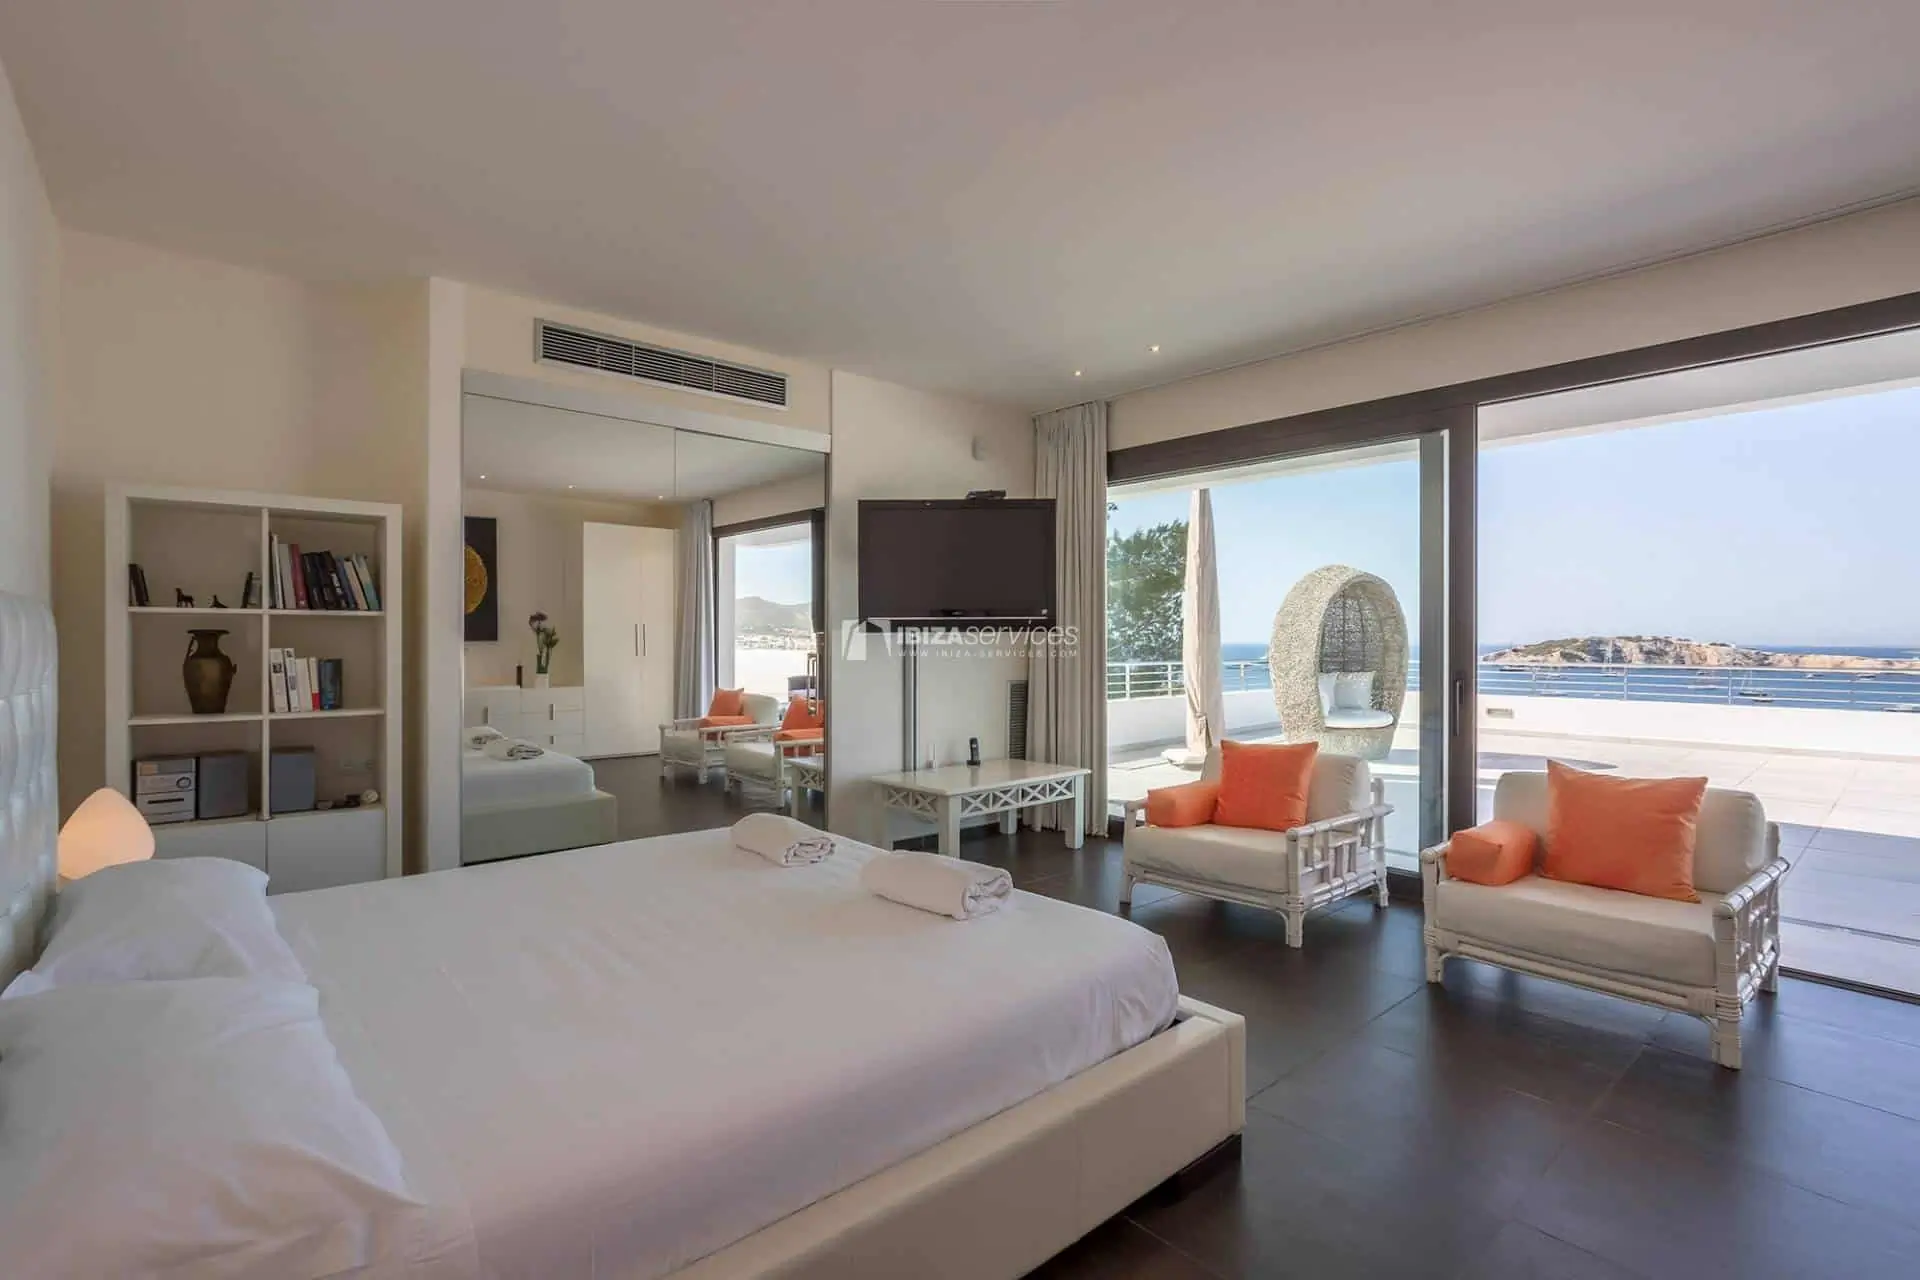 Location saisonnière villa Talamanca 5 chambres avec vue sur la mer